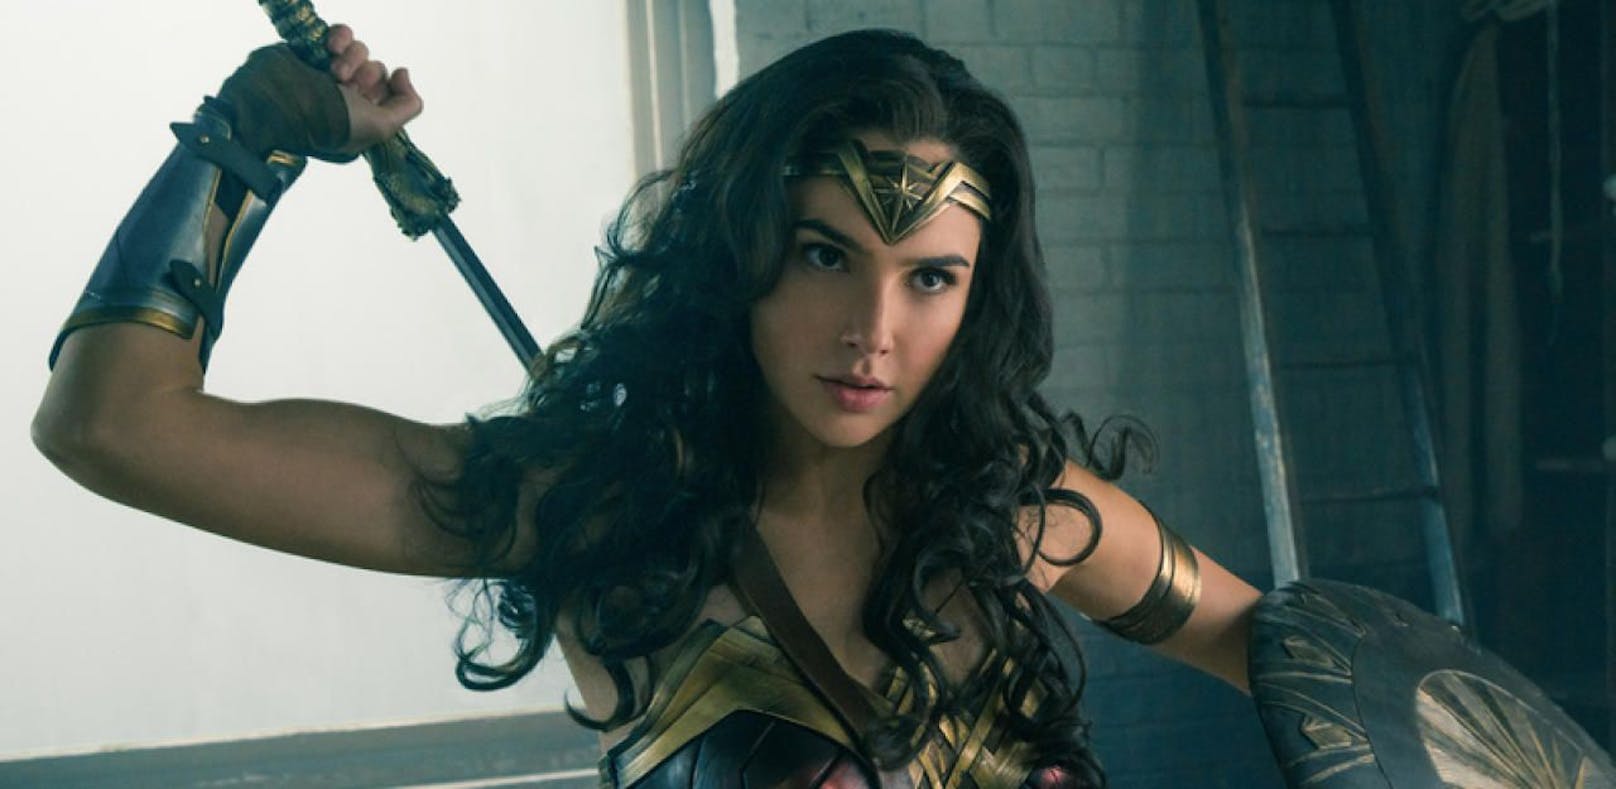 Libanon will Kino-Verbot von "Wonder Woman"